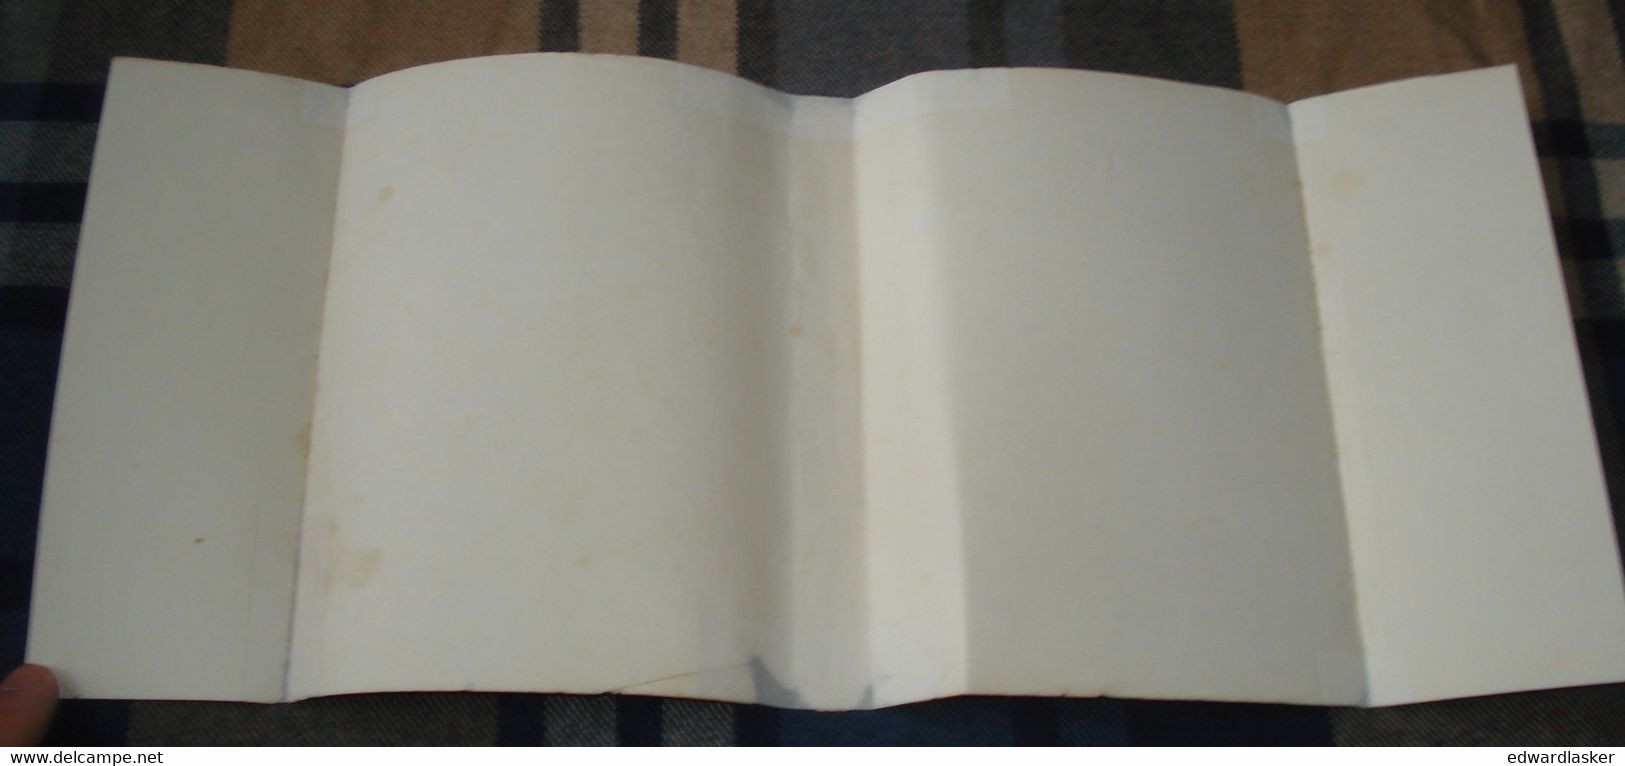 BIBLIOTHEQUE de la JEUNESSE : Par le Détroit de Béring /G. de Poncins - Jaquette 1954 - ill. Paul Durand